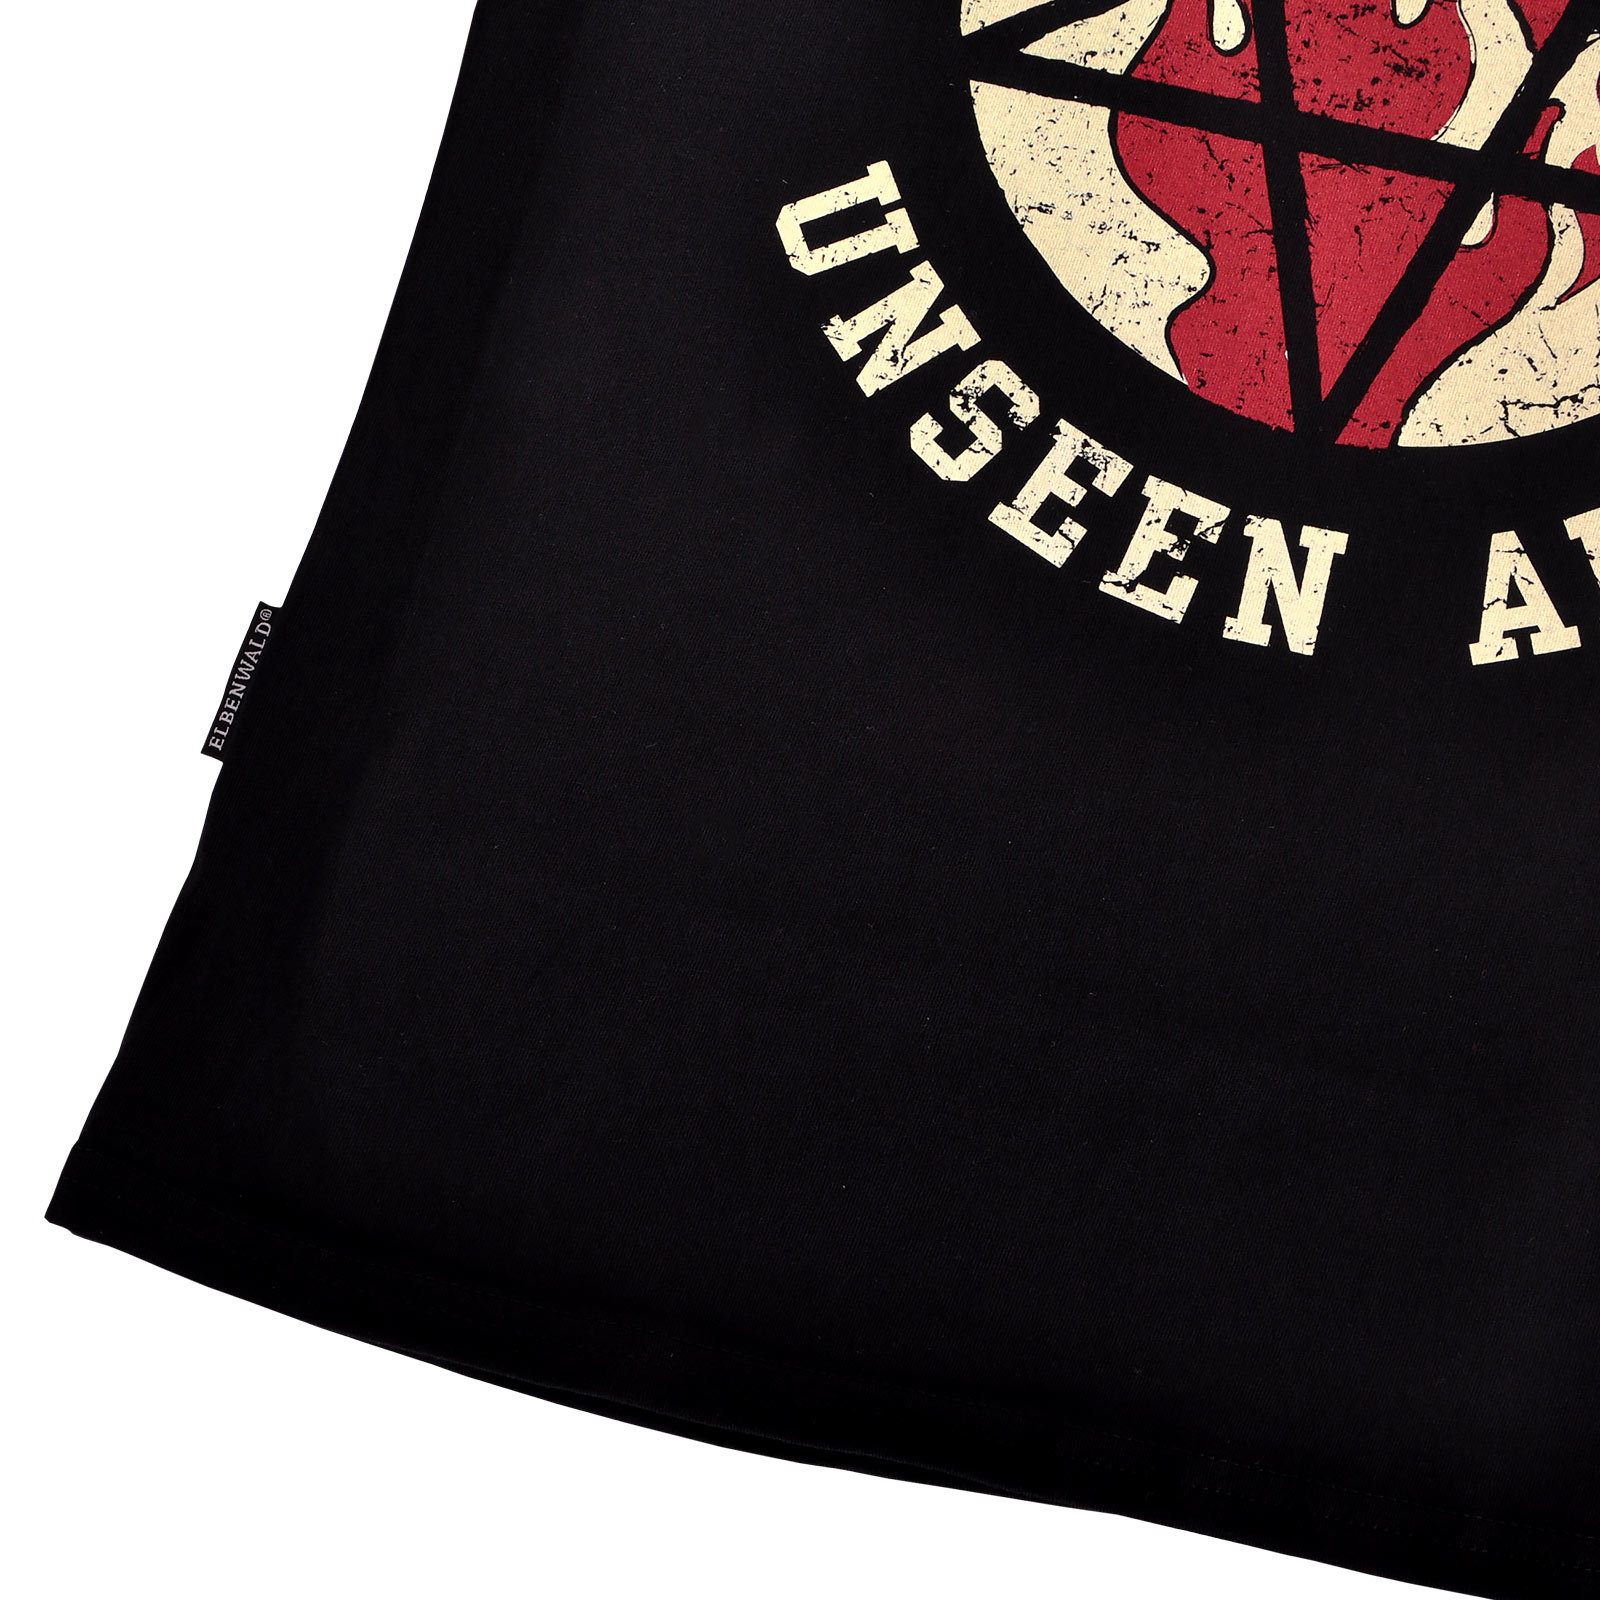 Sabrina - Academy of Unseen Arts Women's T-Shirt Black